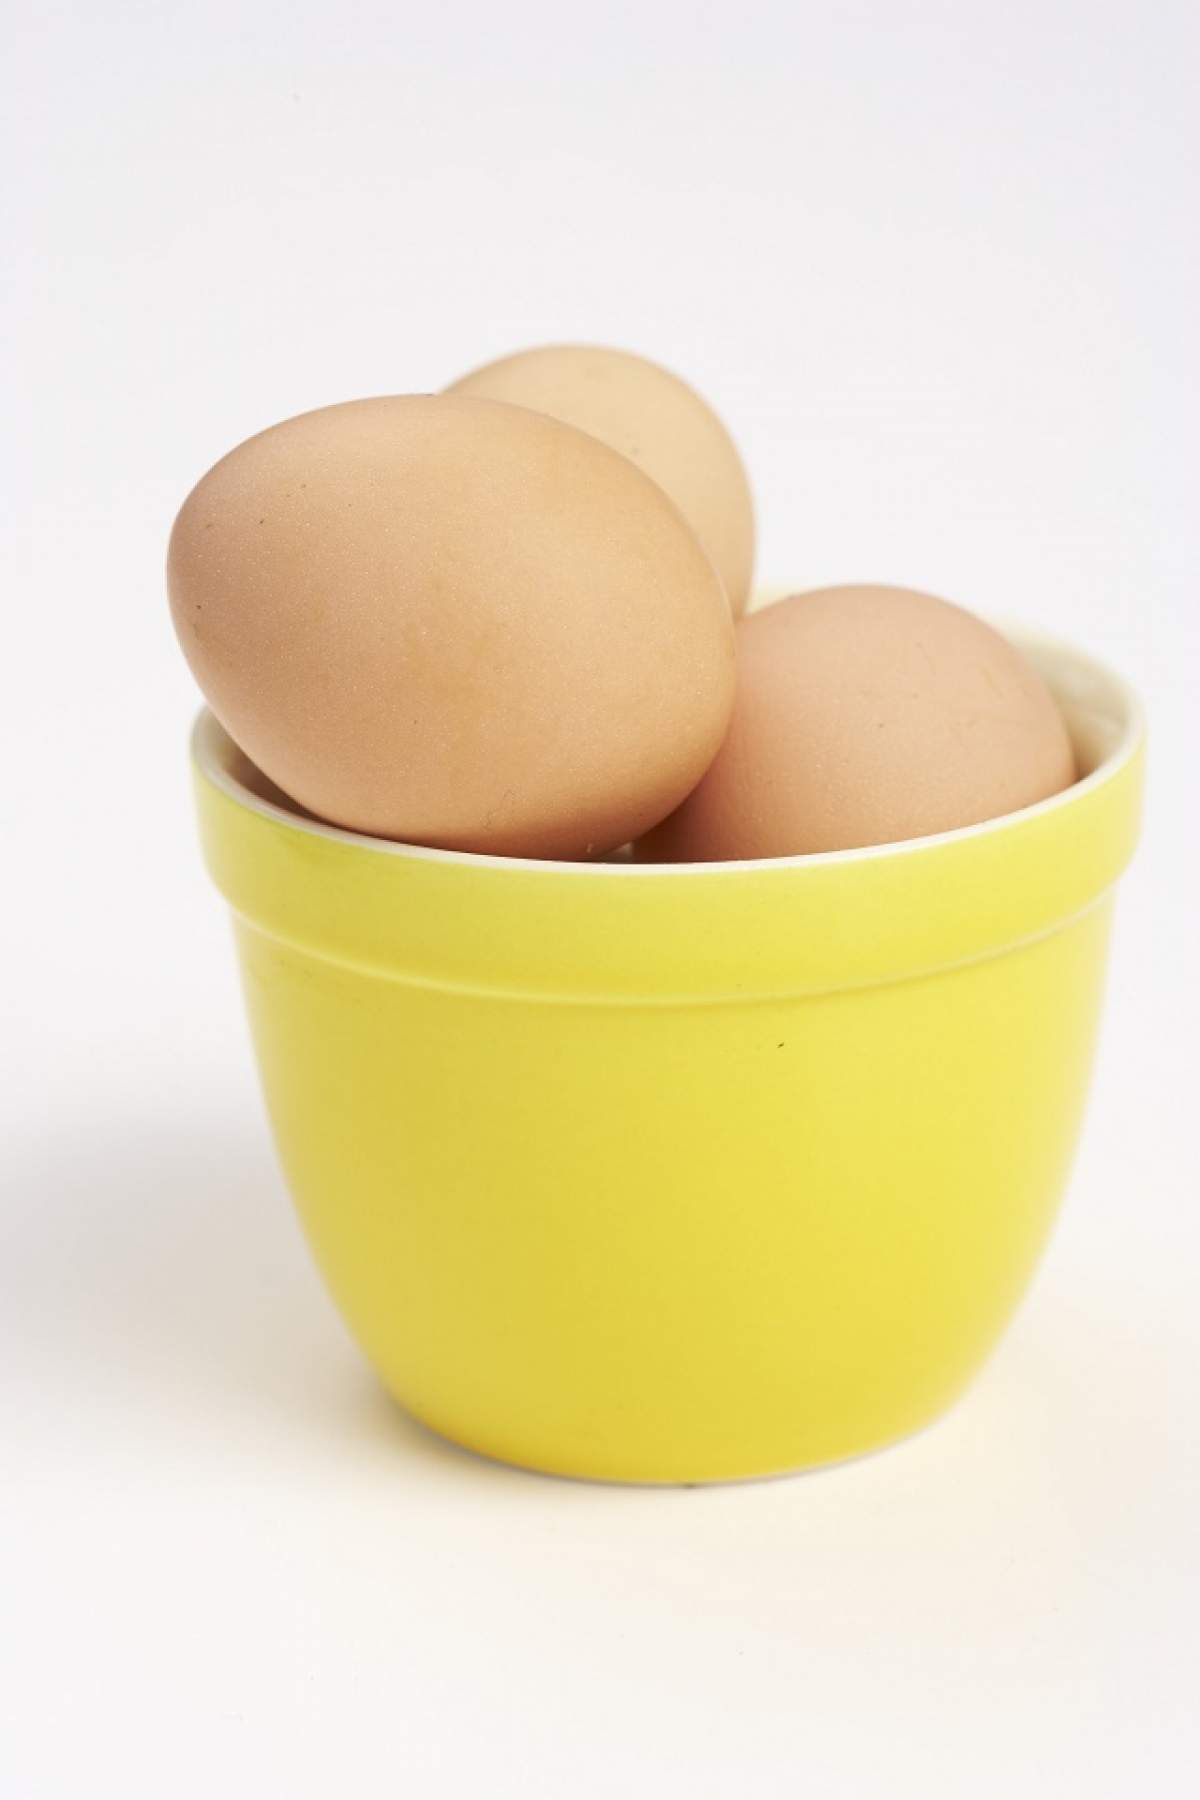 ÎNTREBAREA ZILEI - VINERI: Câte ouă poți să mănânci și să rămâi sănătos?